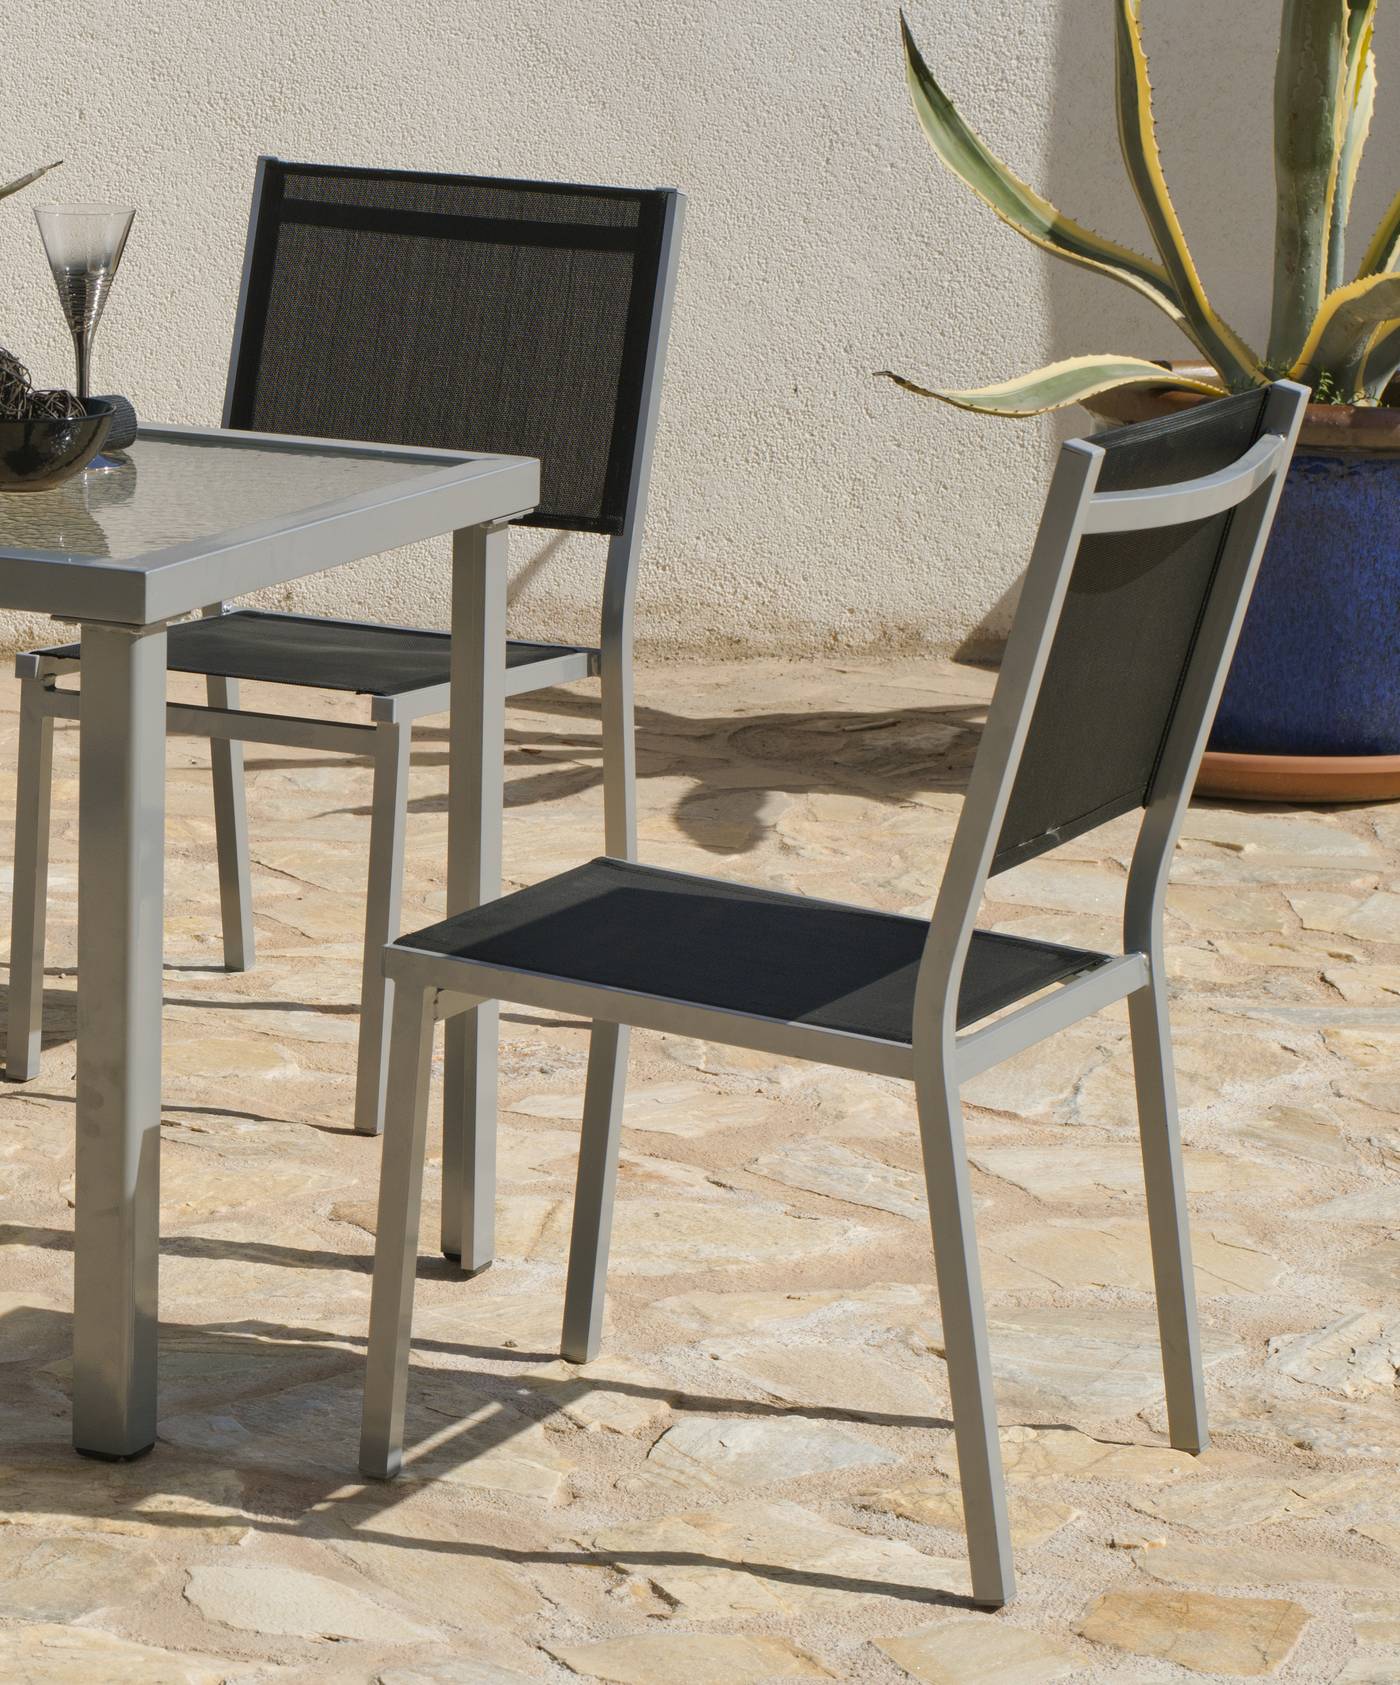 Conjunto Aluminio Baltimore 70-4 - Conjunto de aluminio color plata: mesa cuadrada de 70 cm. + 4 sillas de alumnio y textilen